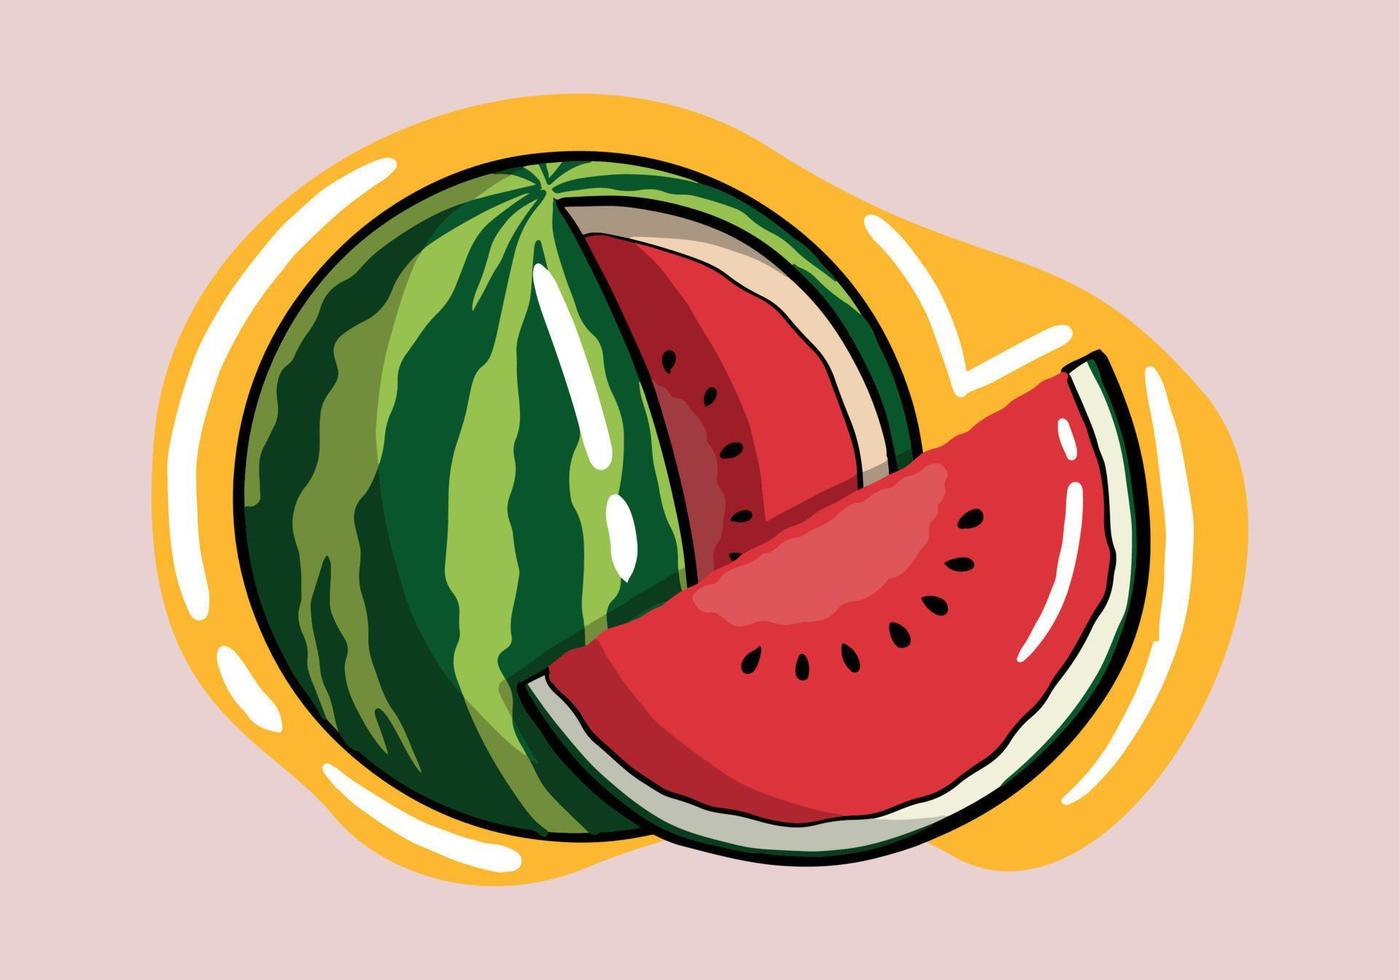 Hand gezeichnet Wassermelone Scheibe Vektor Satz. Wassermelone Illustration Obst Vektor Design.